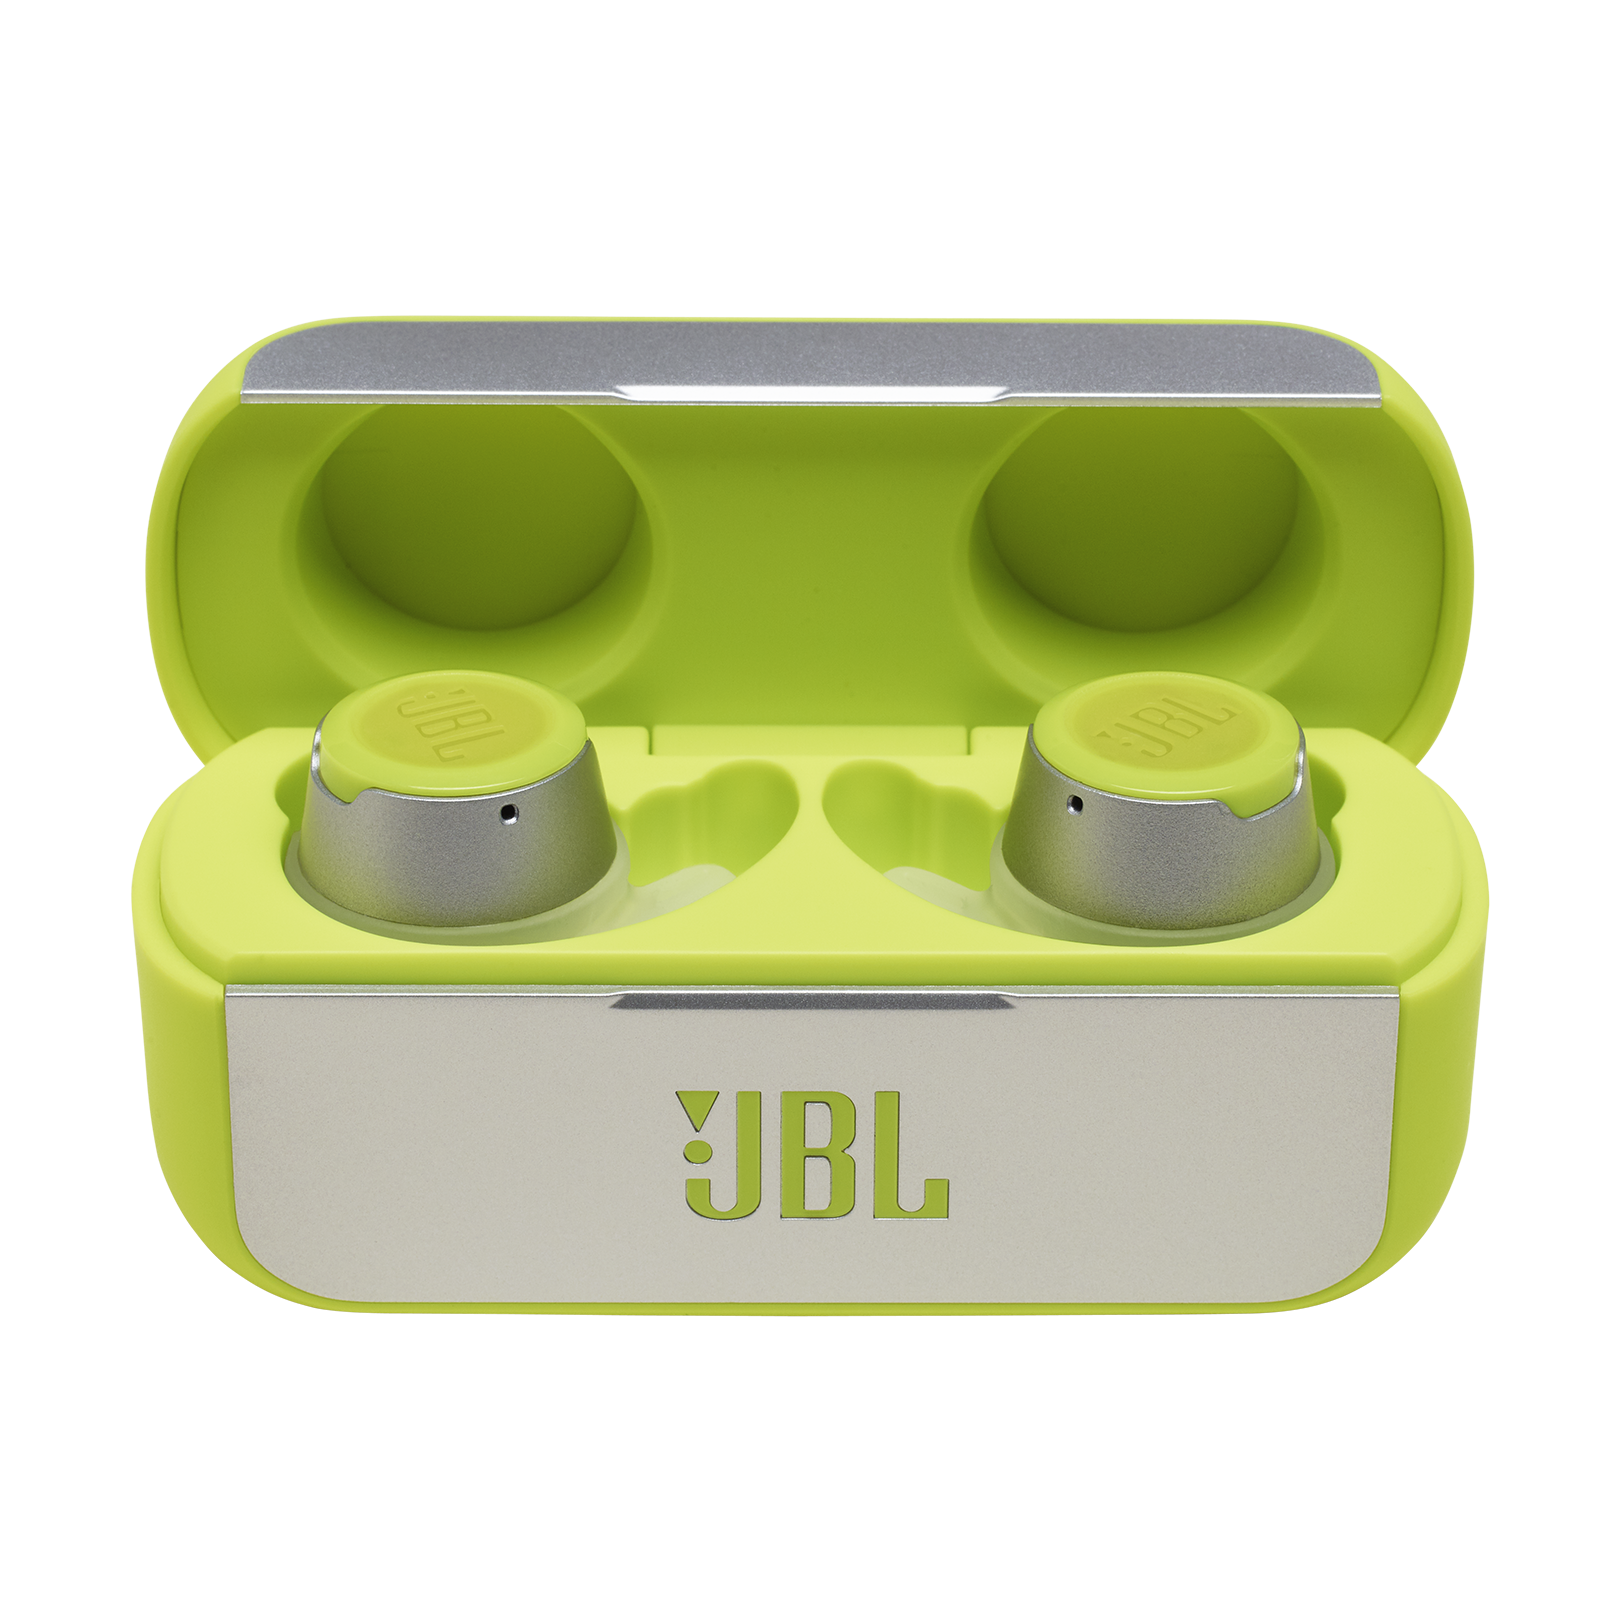 JBL Reflect | Waterproof true earbuds